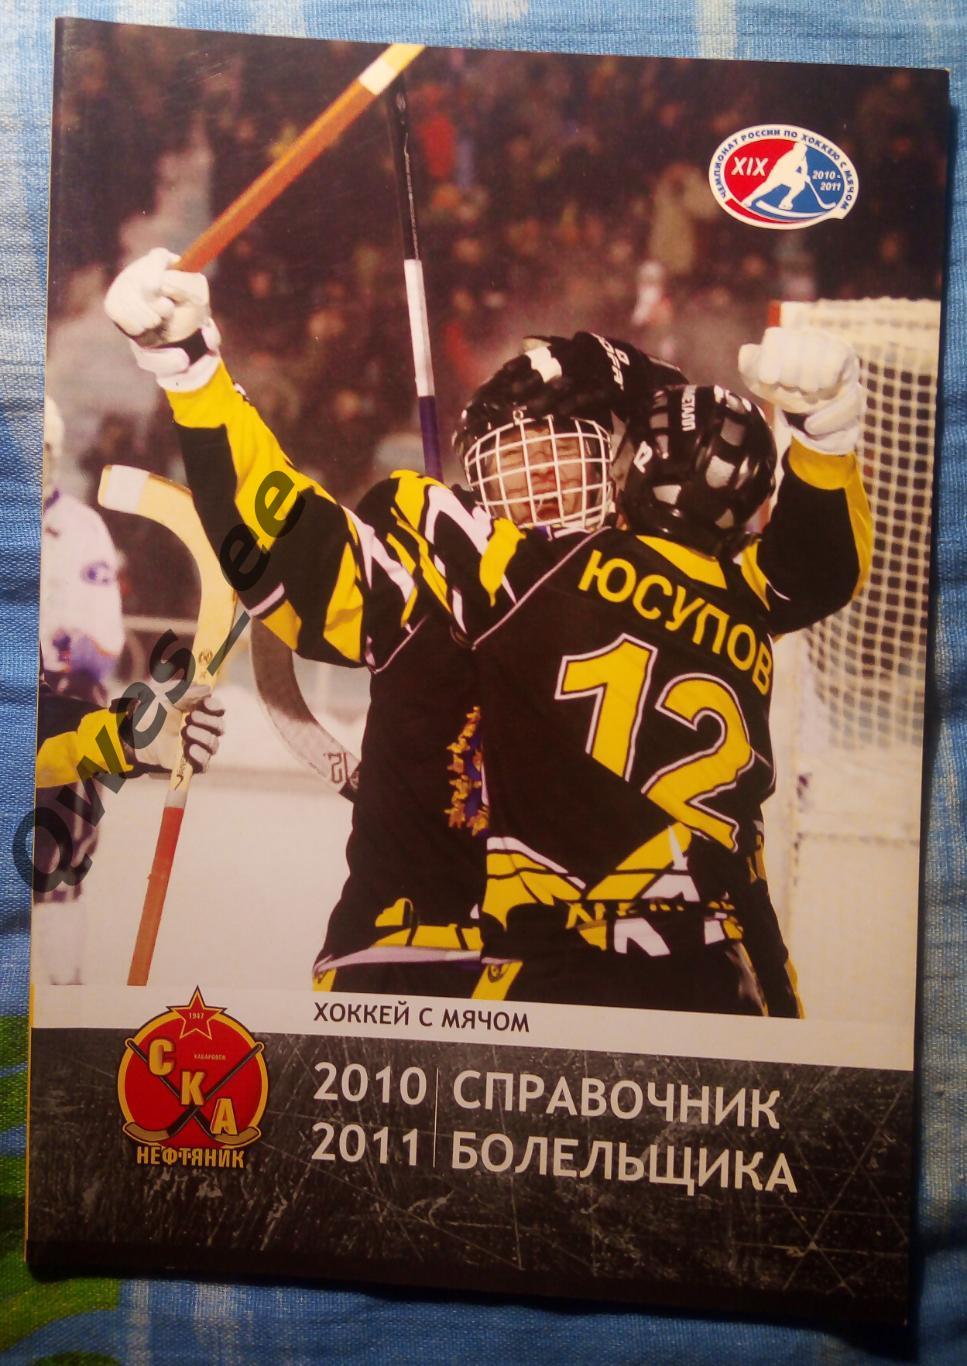 Хоккей с мячом Ска-Нефтяник Хабаровск 2010-2011